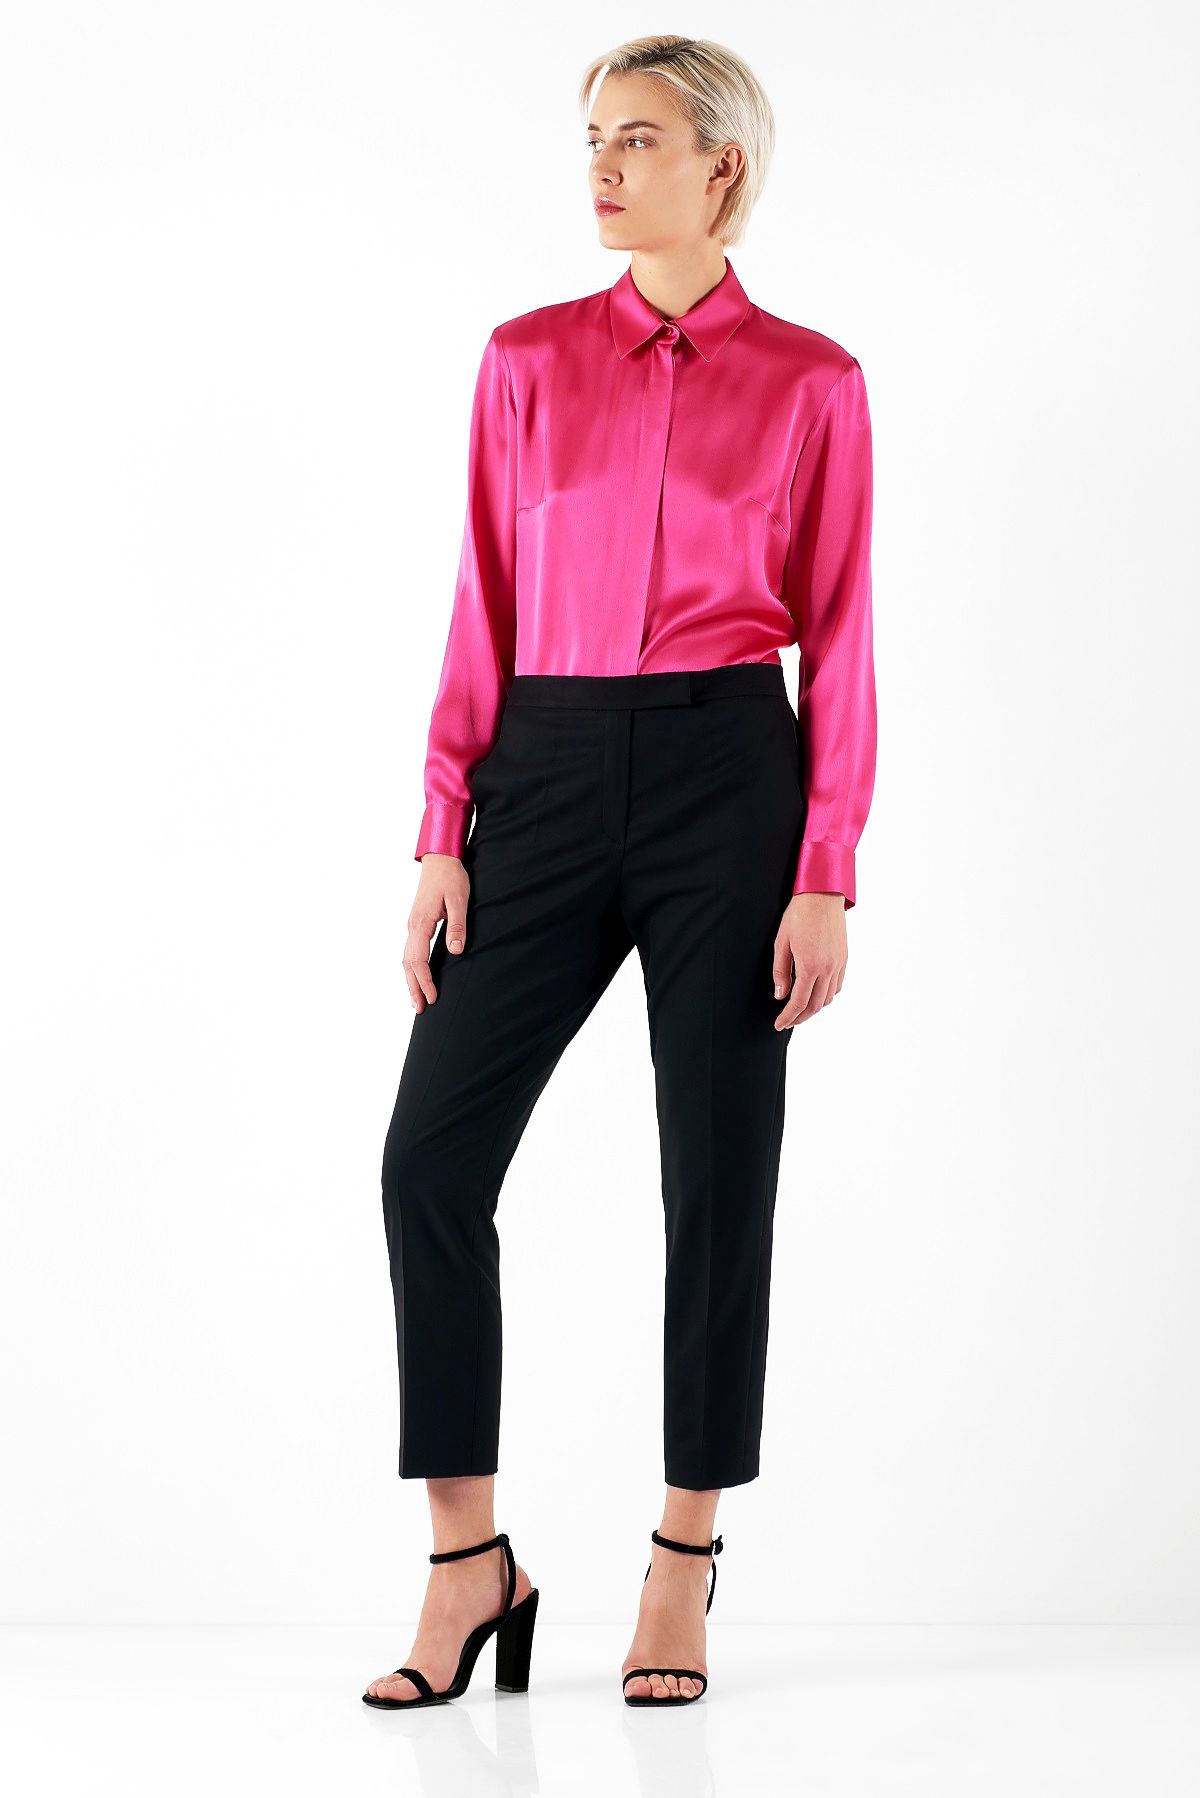 VASSA&Co, блузка из вискозного шелка цвета фуксии, 16 900 руб.